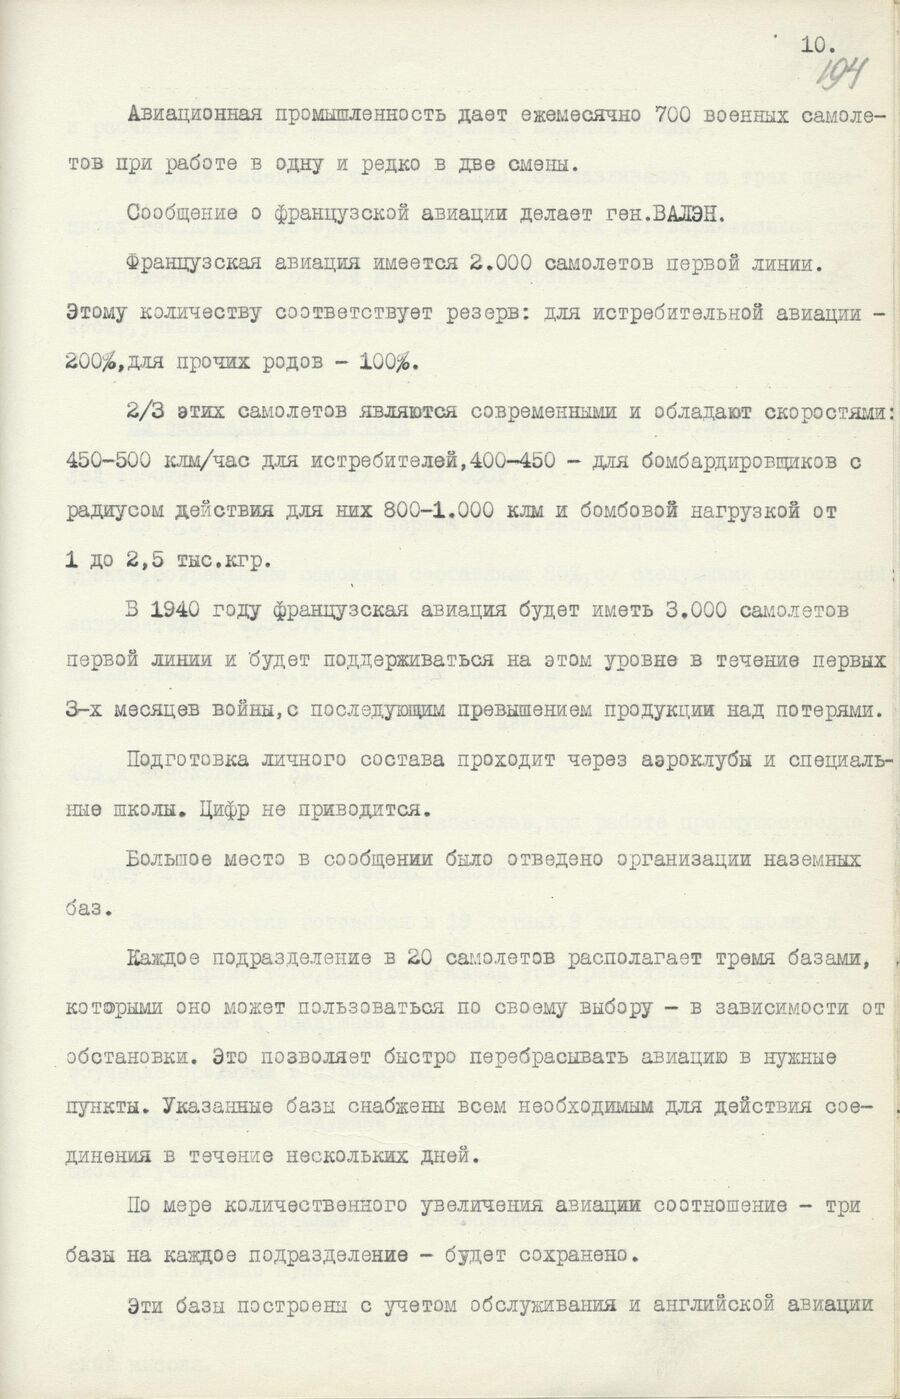 1939.08.26 Отчет о работе совещания. Лист 10